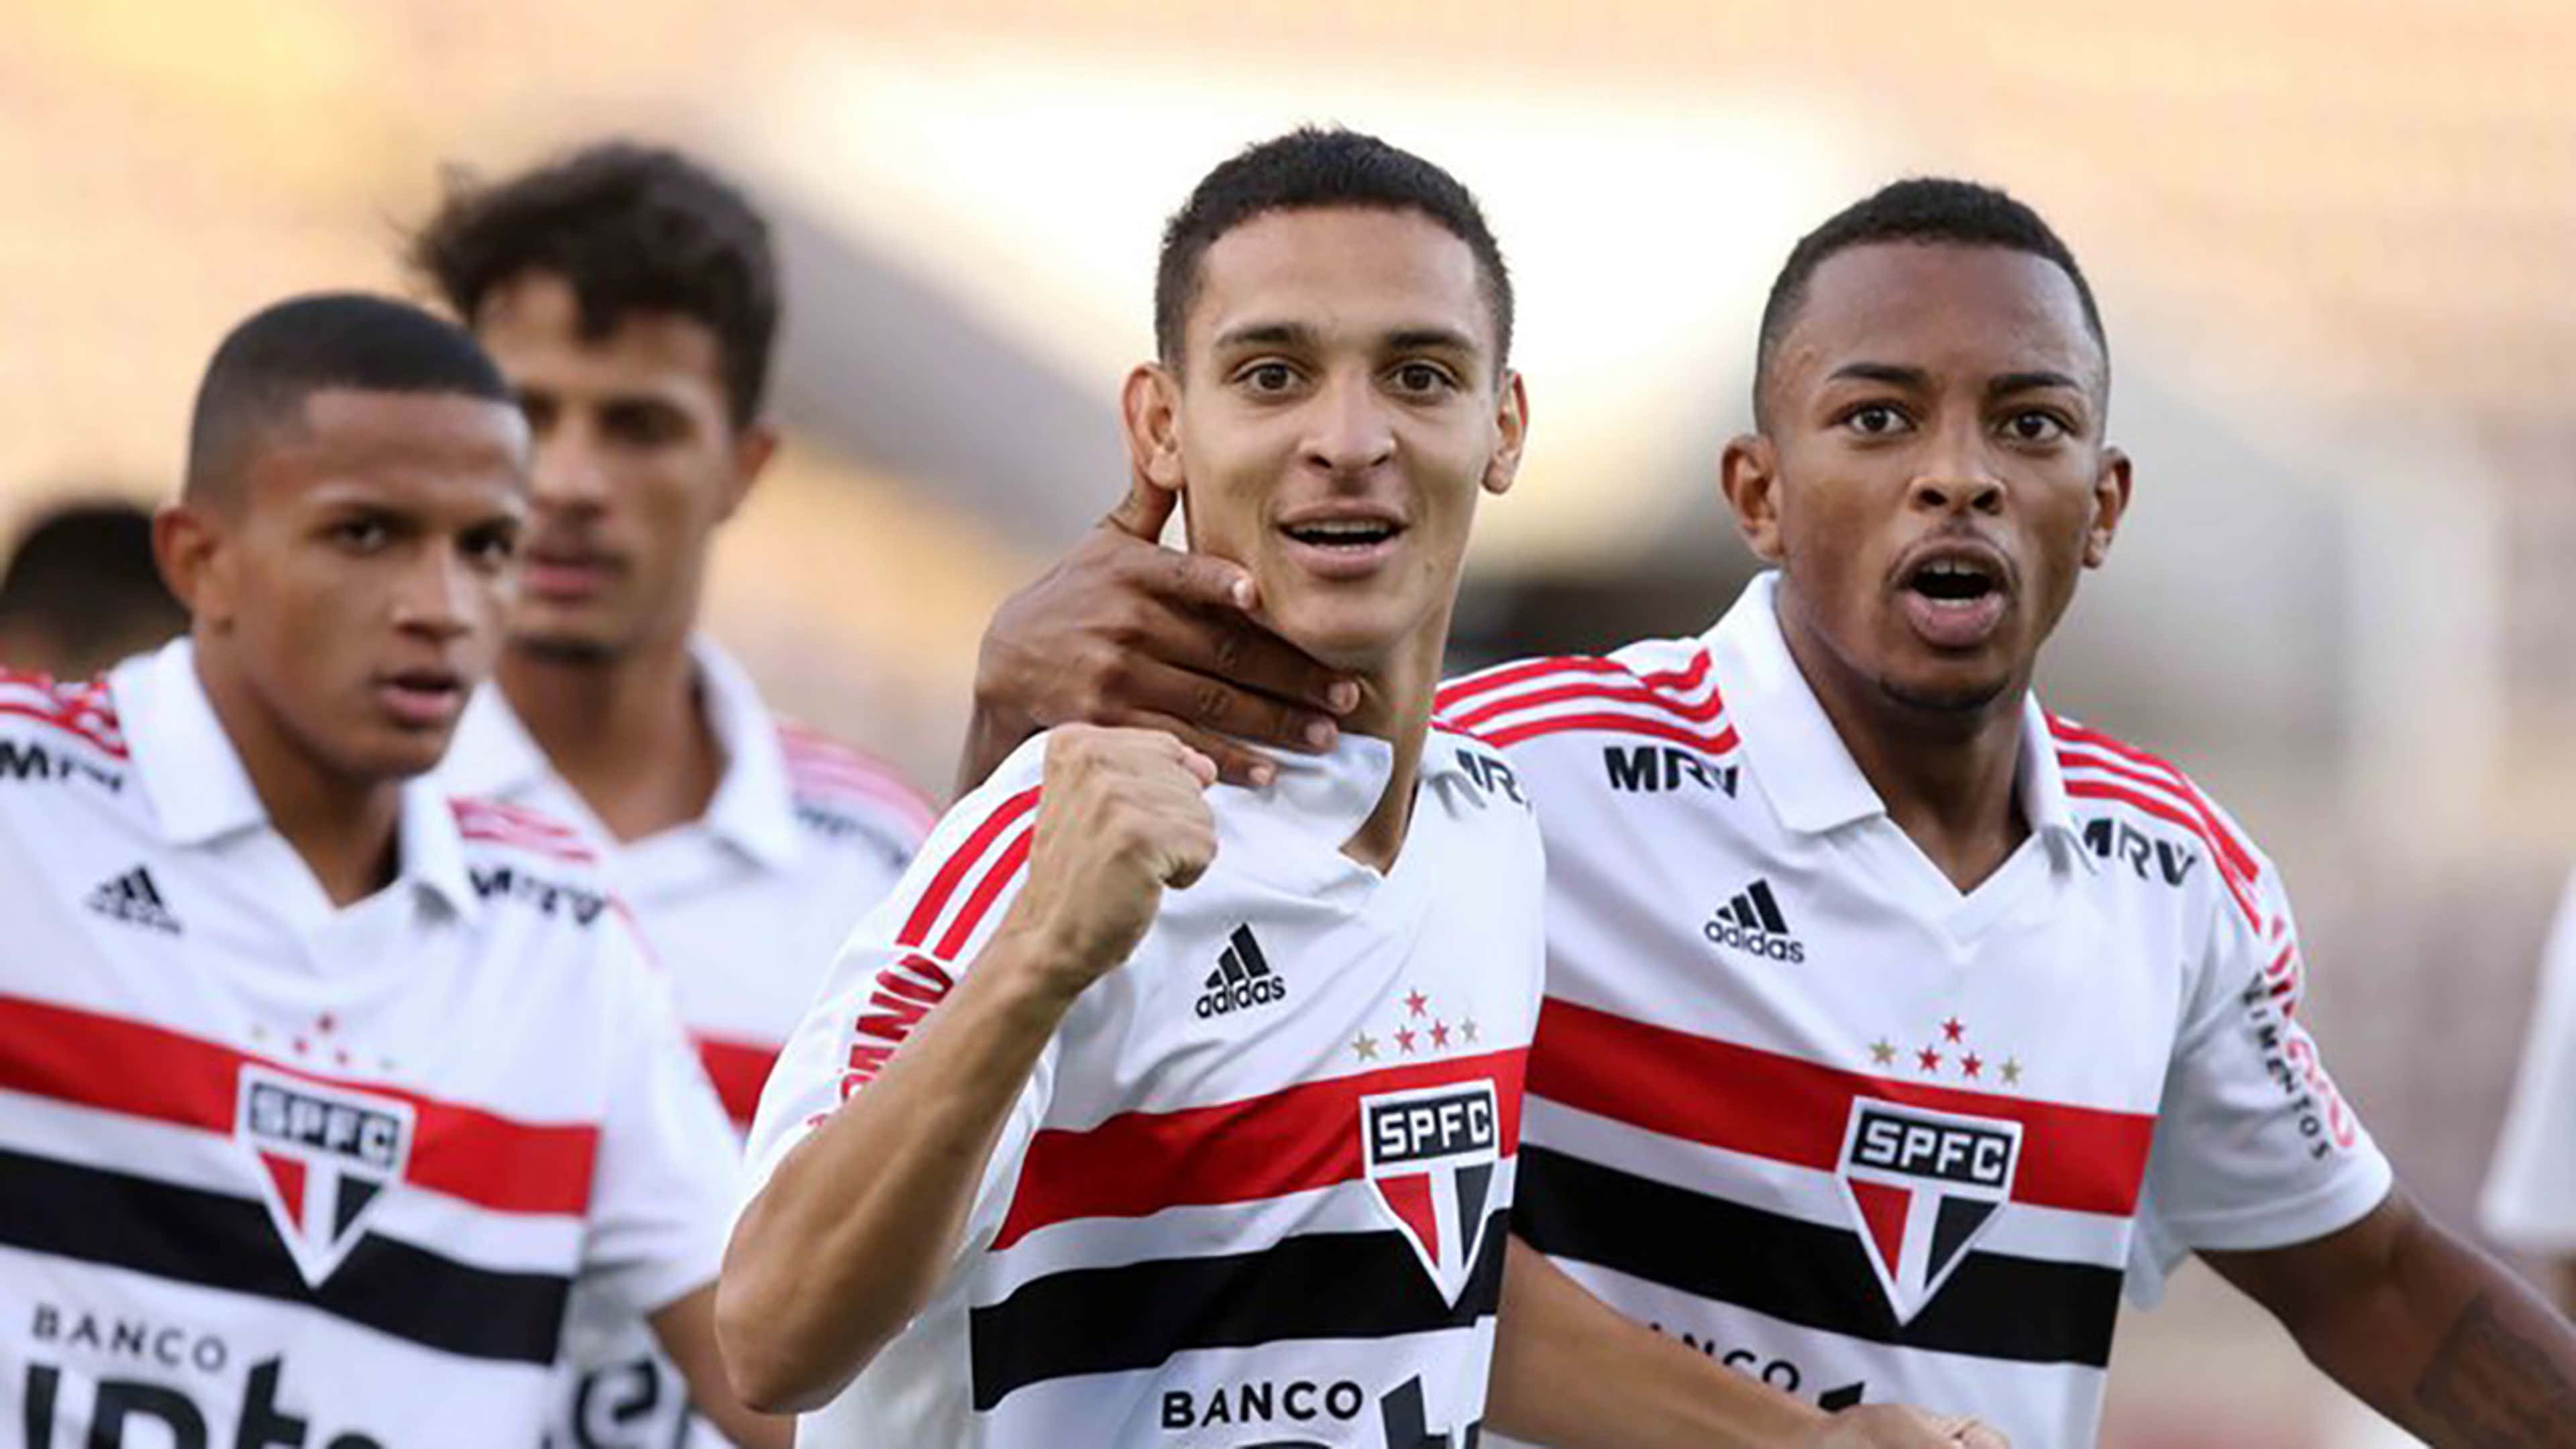 Copa Paulista vem mostrando o melhor do futebol raíz de São Paulo